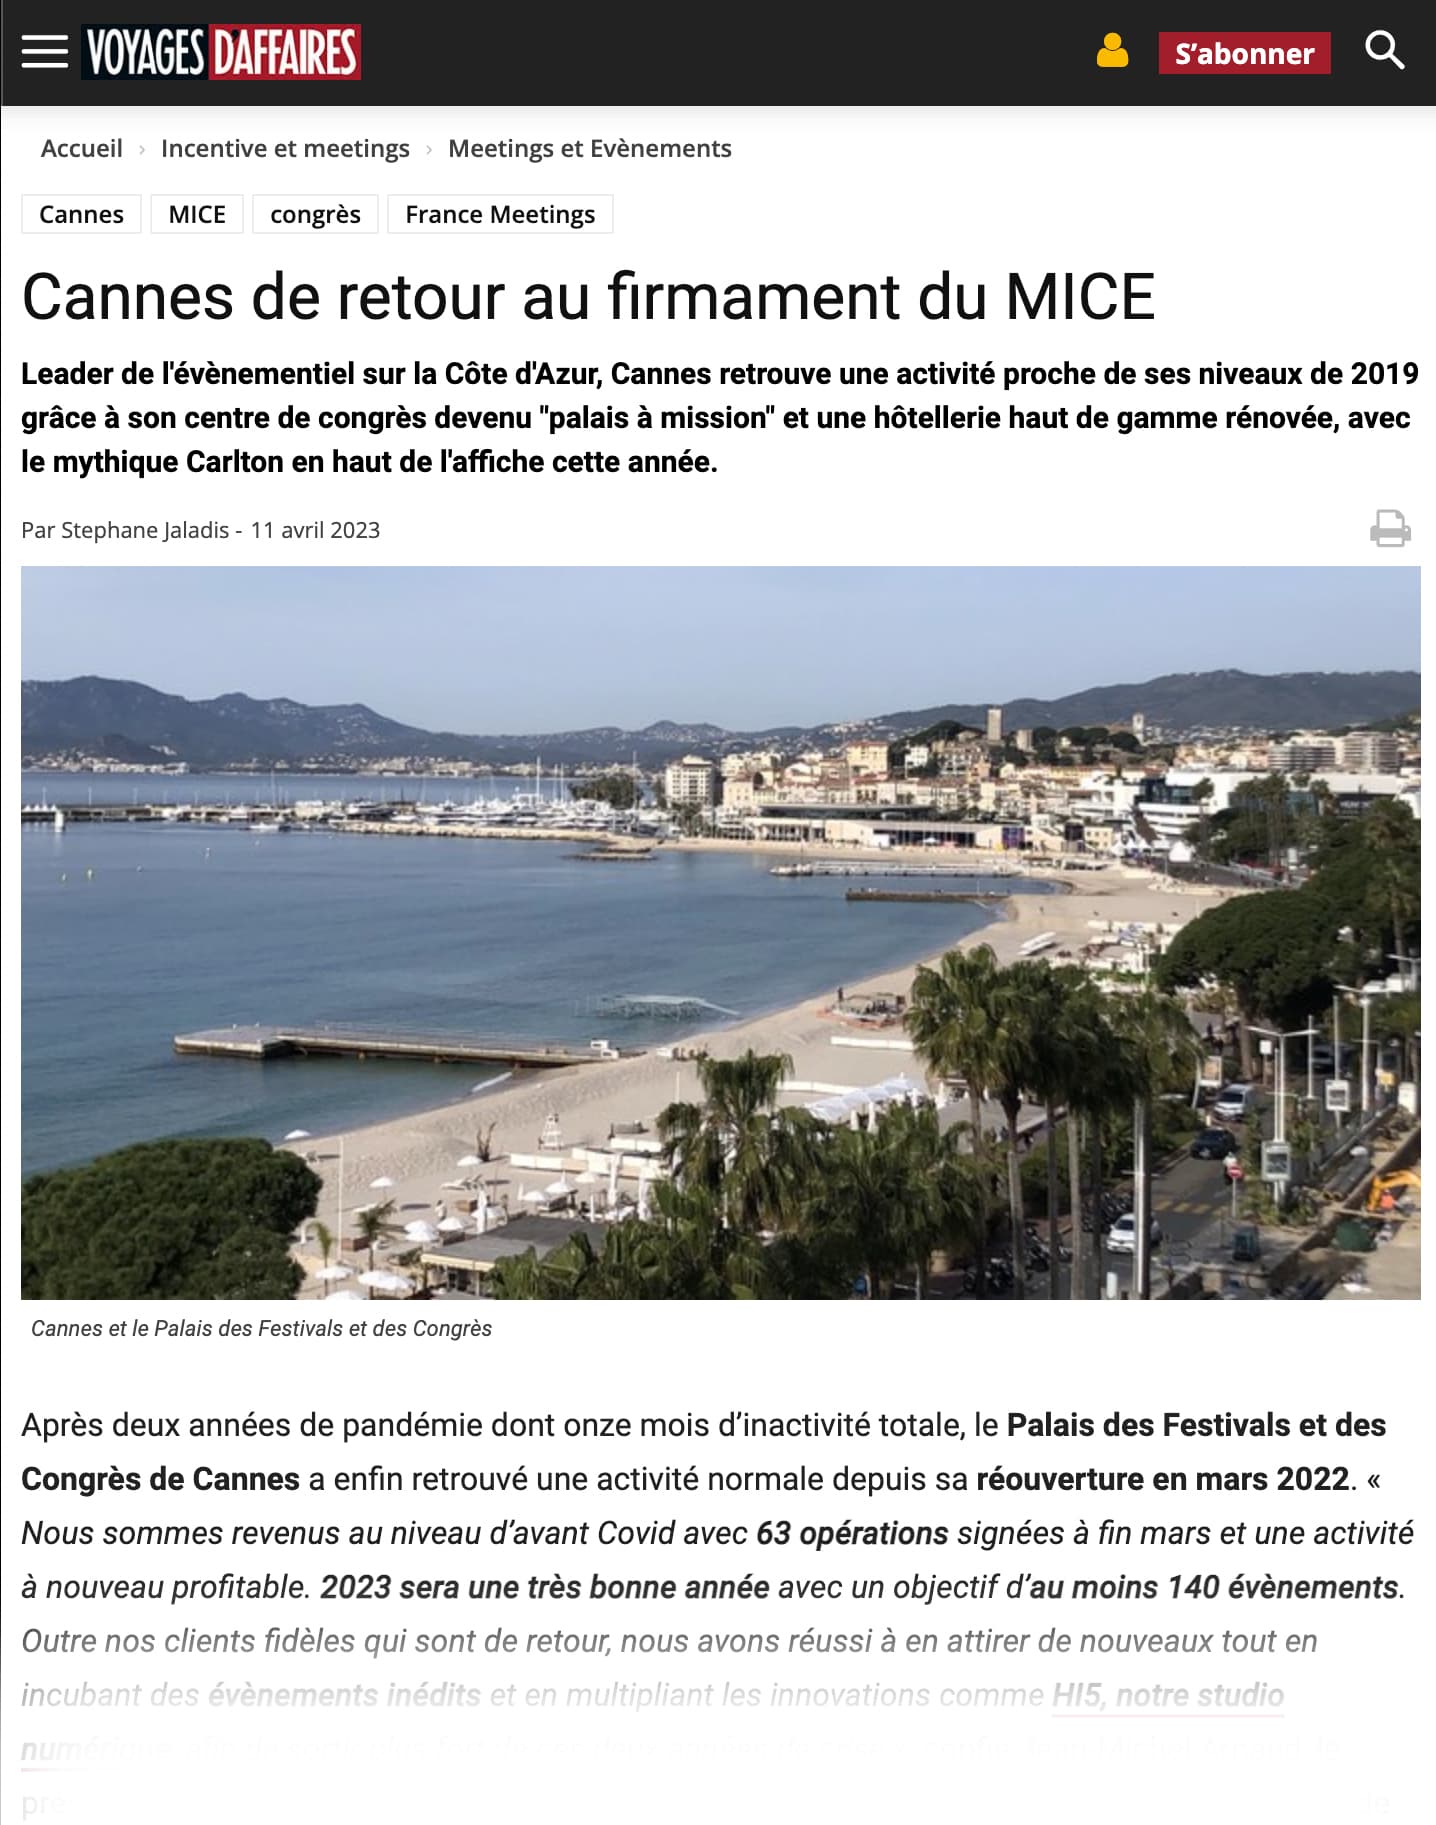 Cannes de retour au firmament du MICE